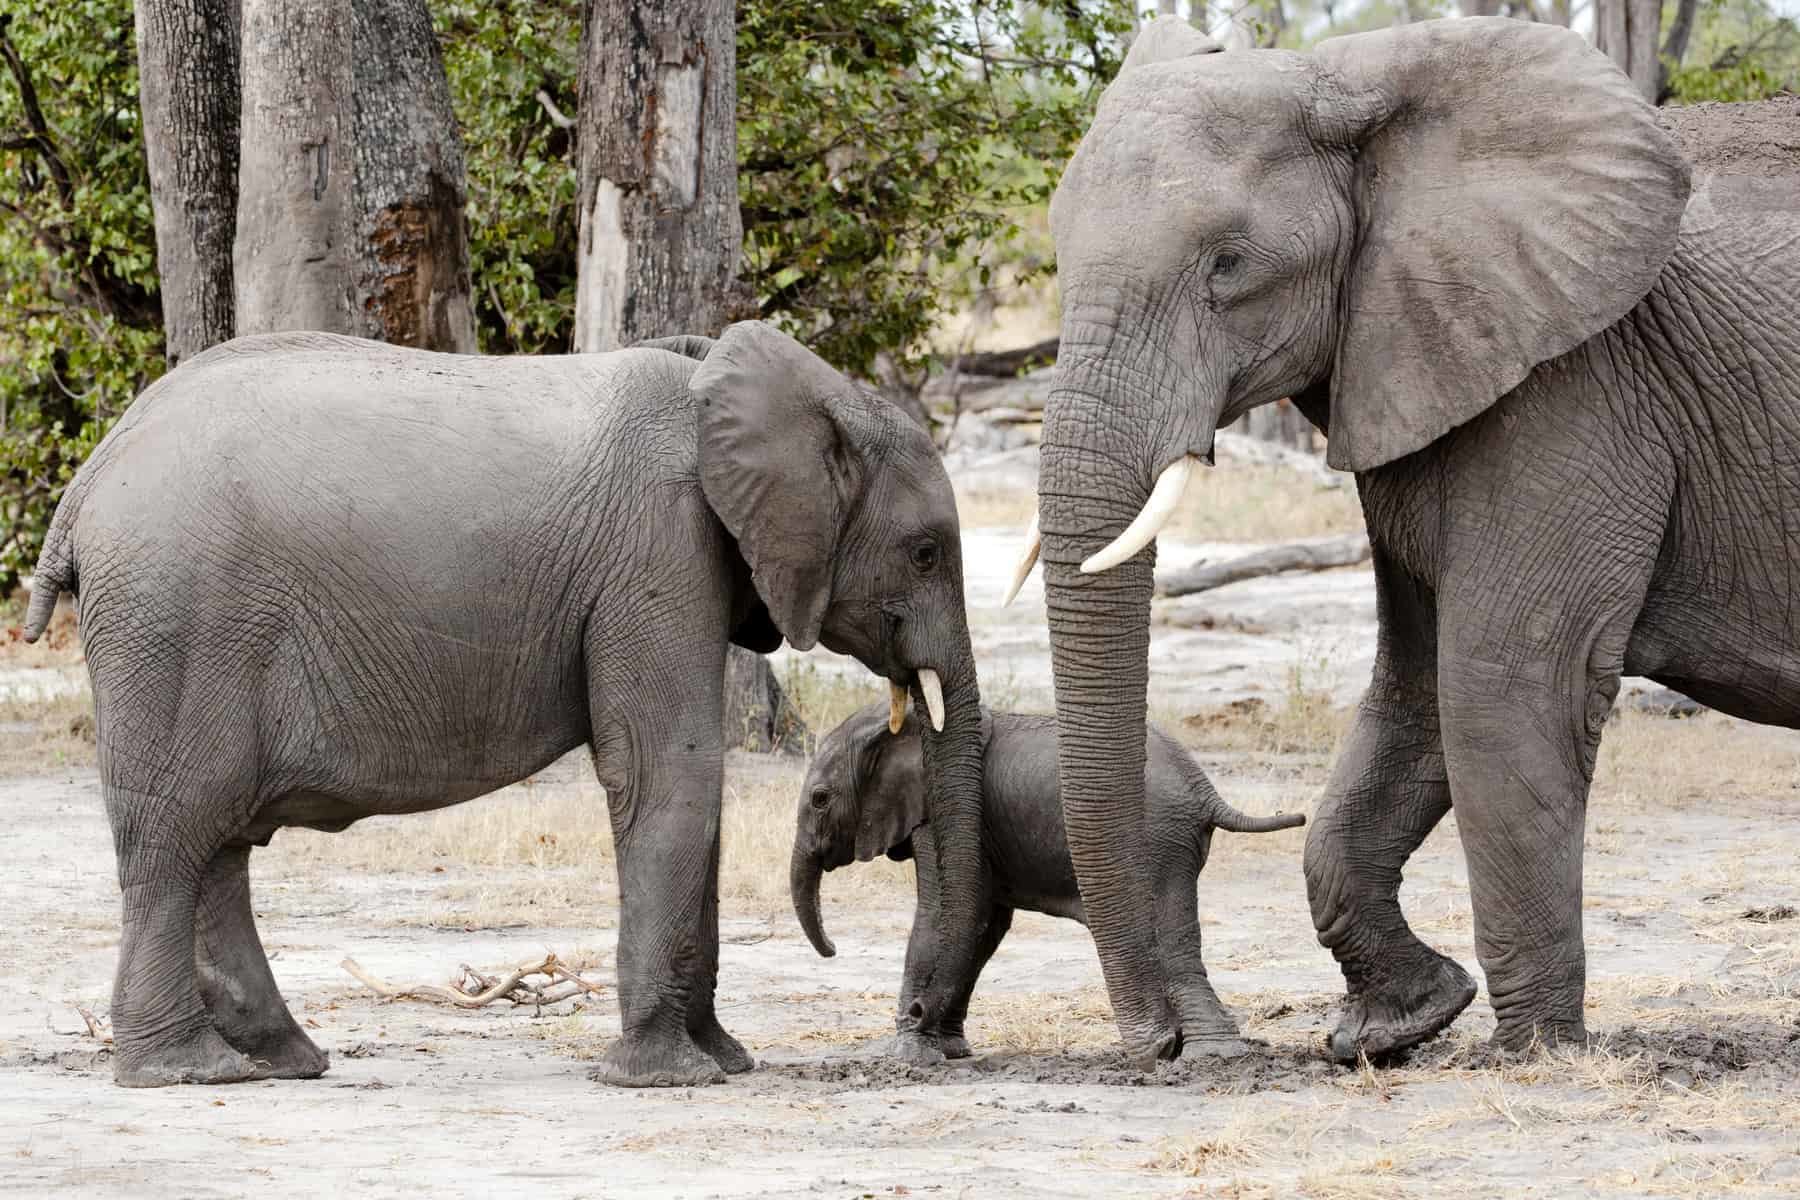 Baby elephant between mother and brother, Okavango Delta, Botswana, Africa